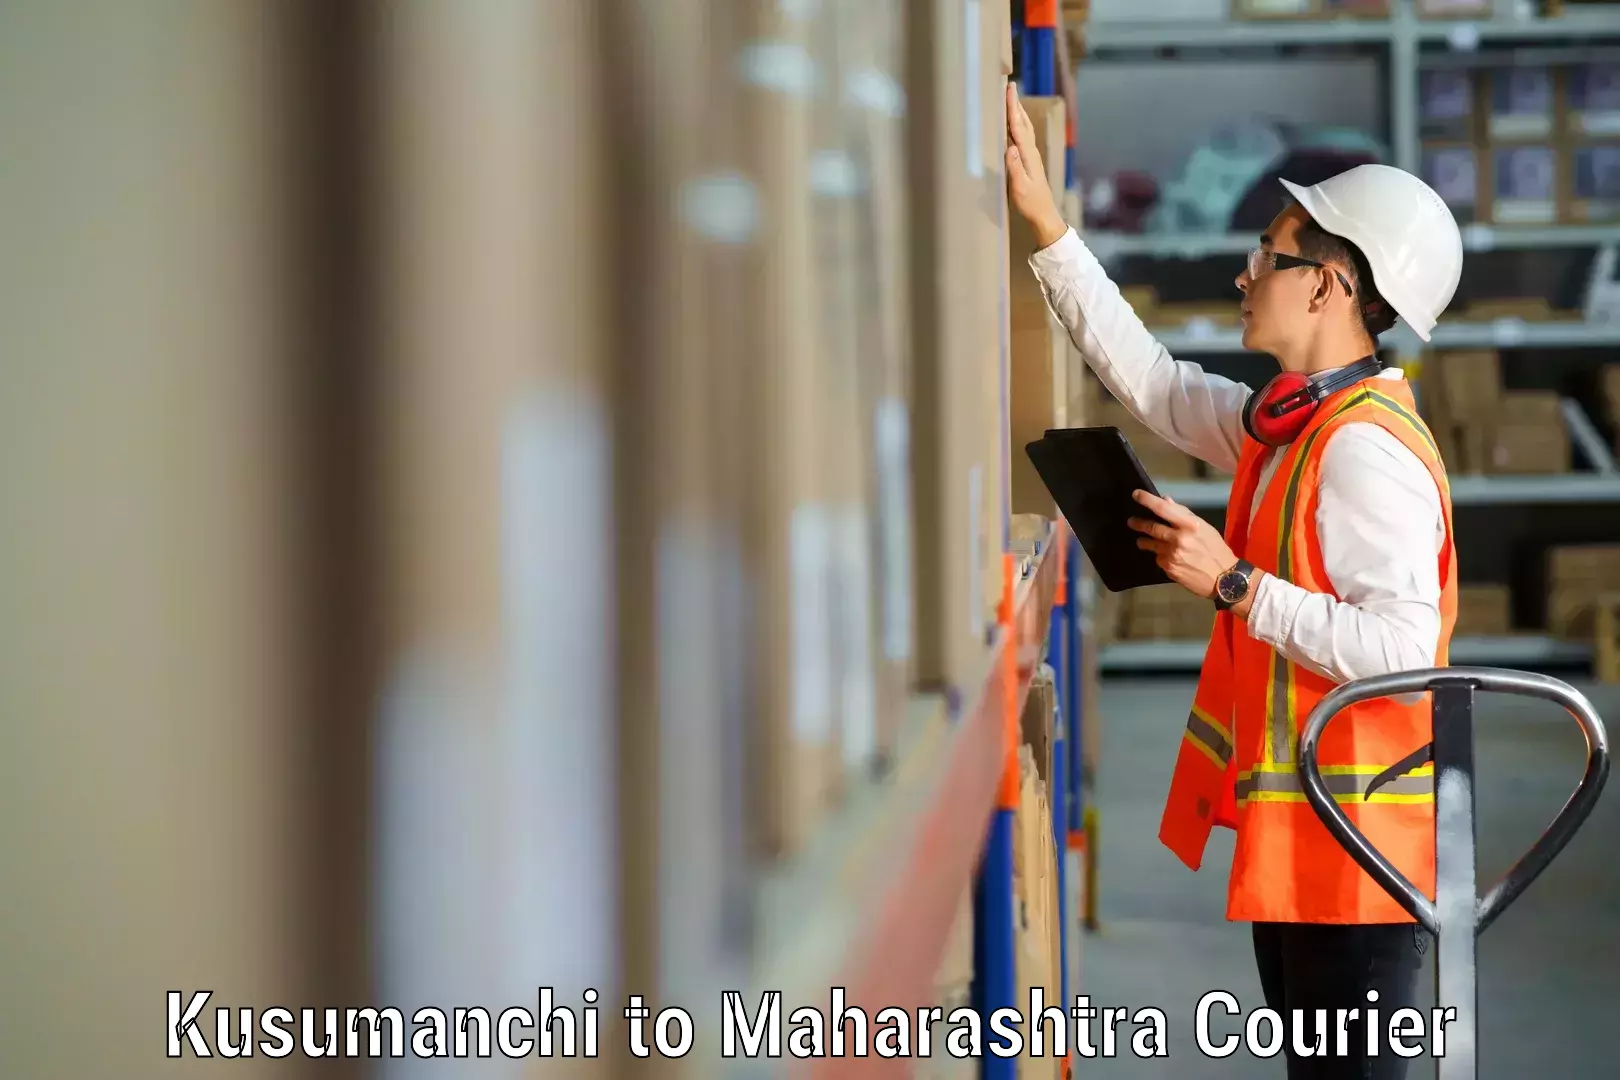 Household moving experts Kusumanchi to Loha Nanded